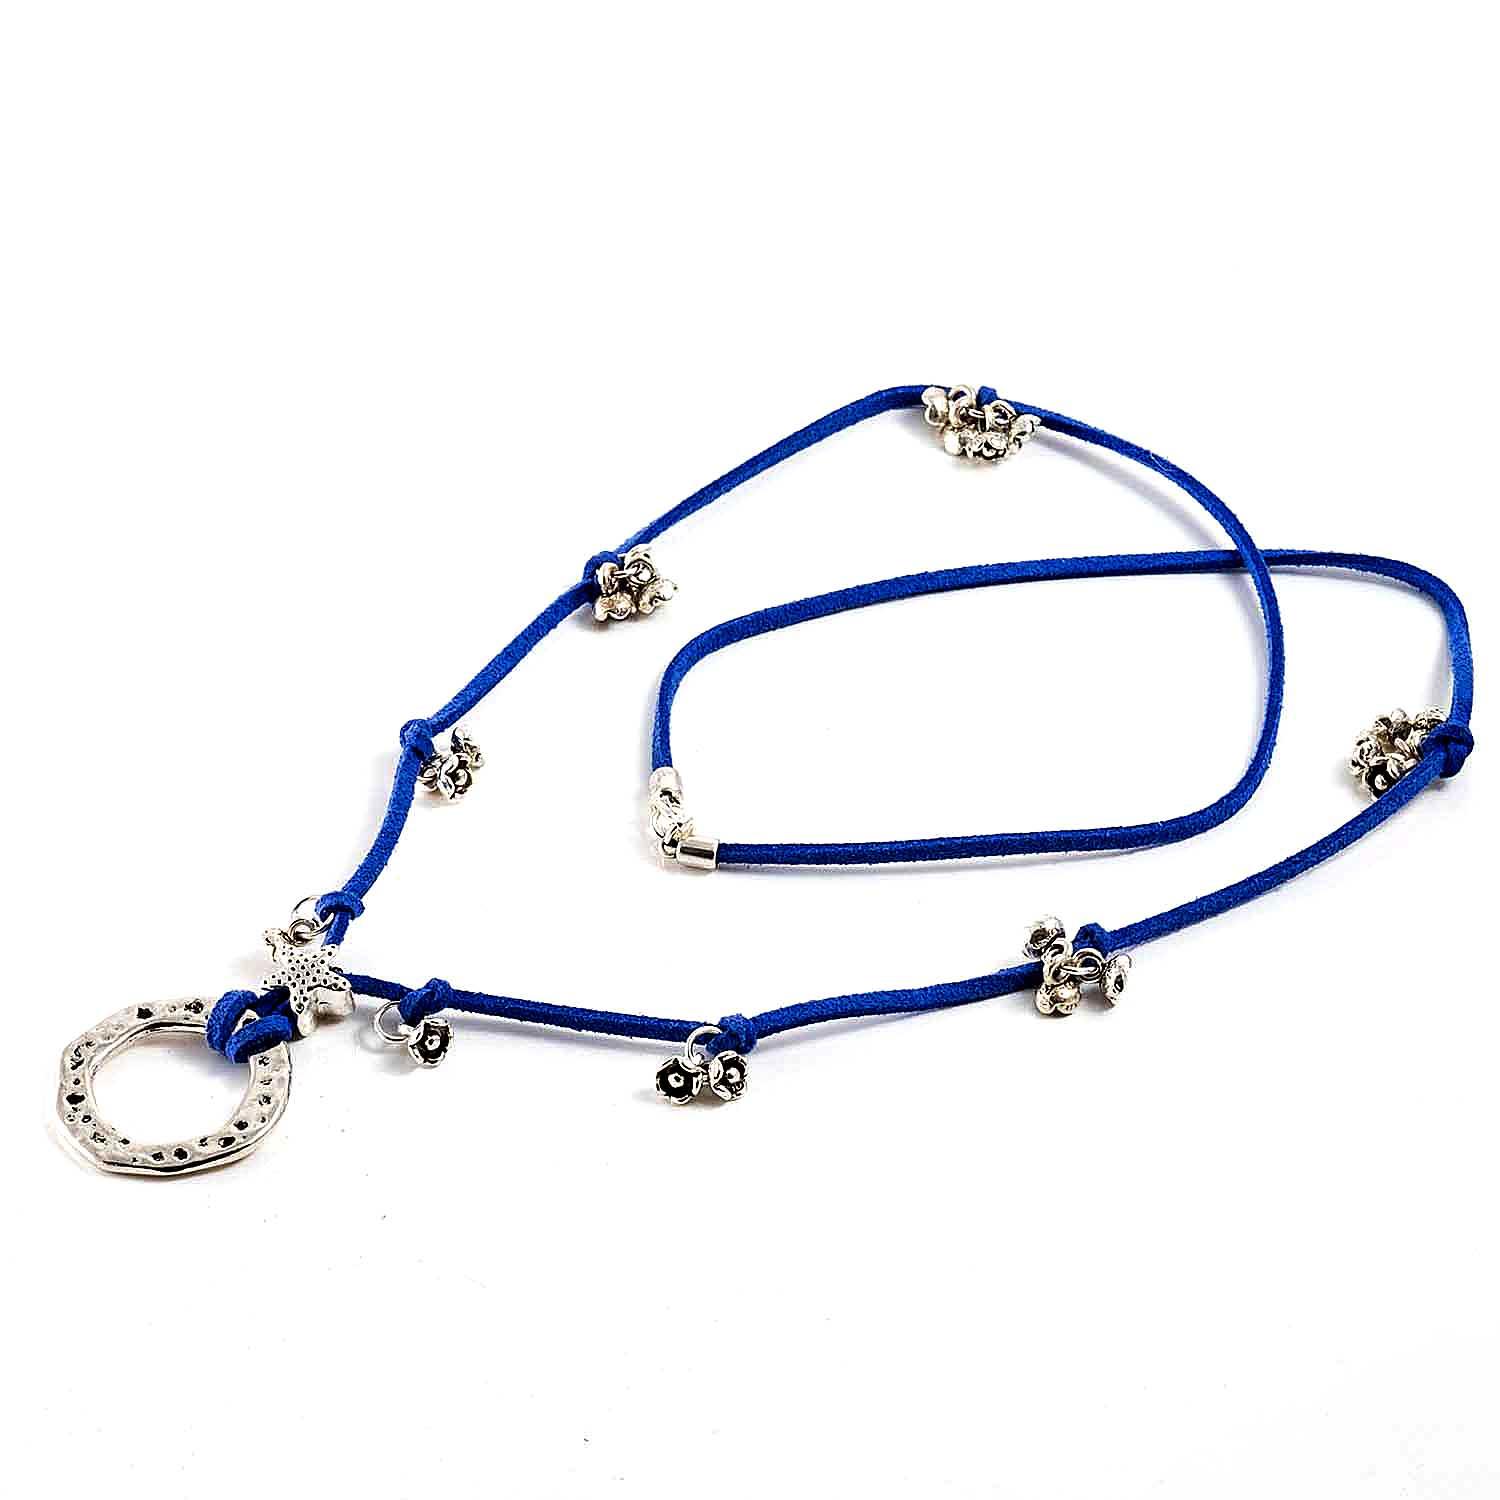 Collar cuelga gafas de antelina azul eléctrico con decoraciones color plata.